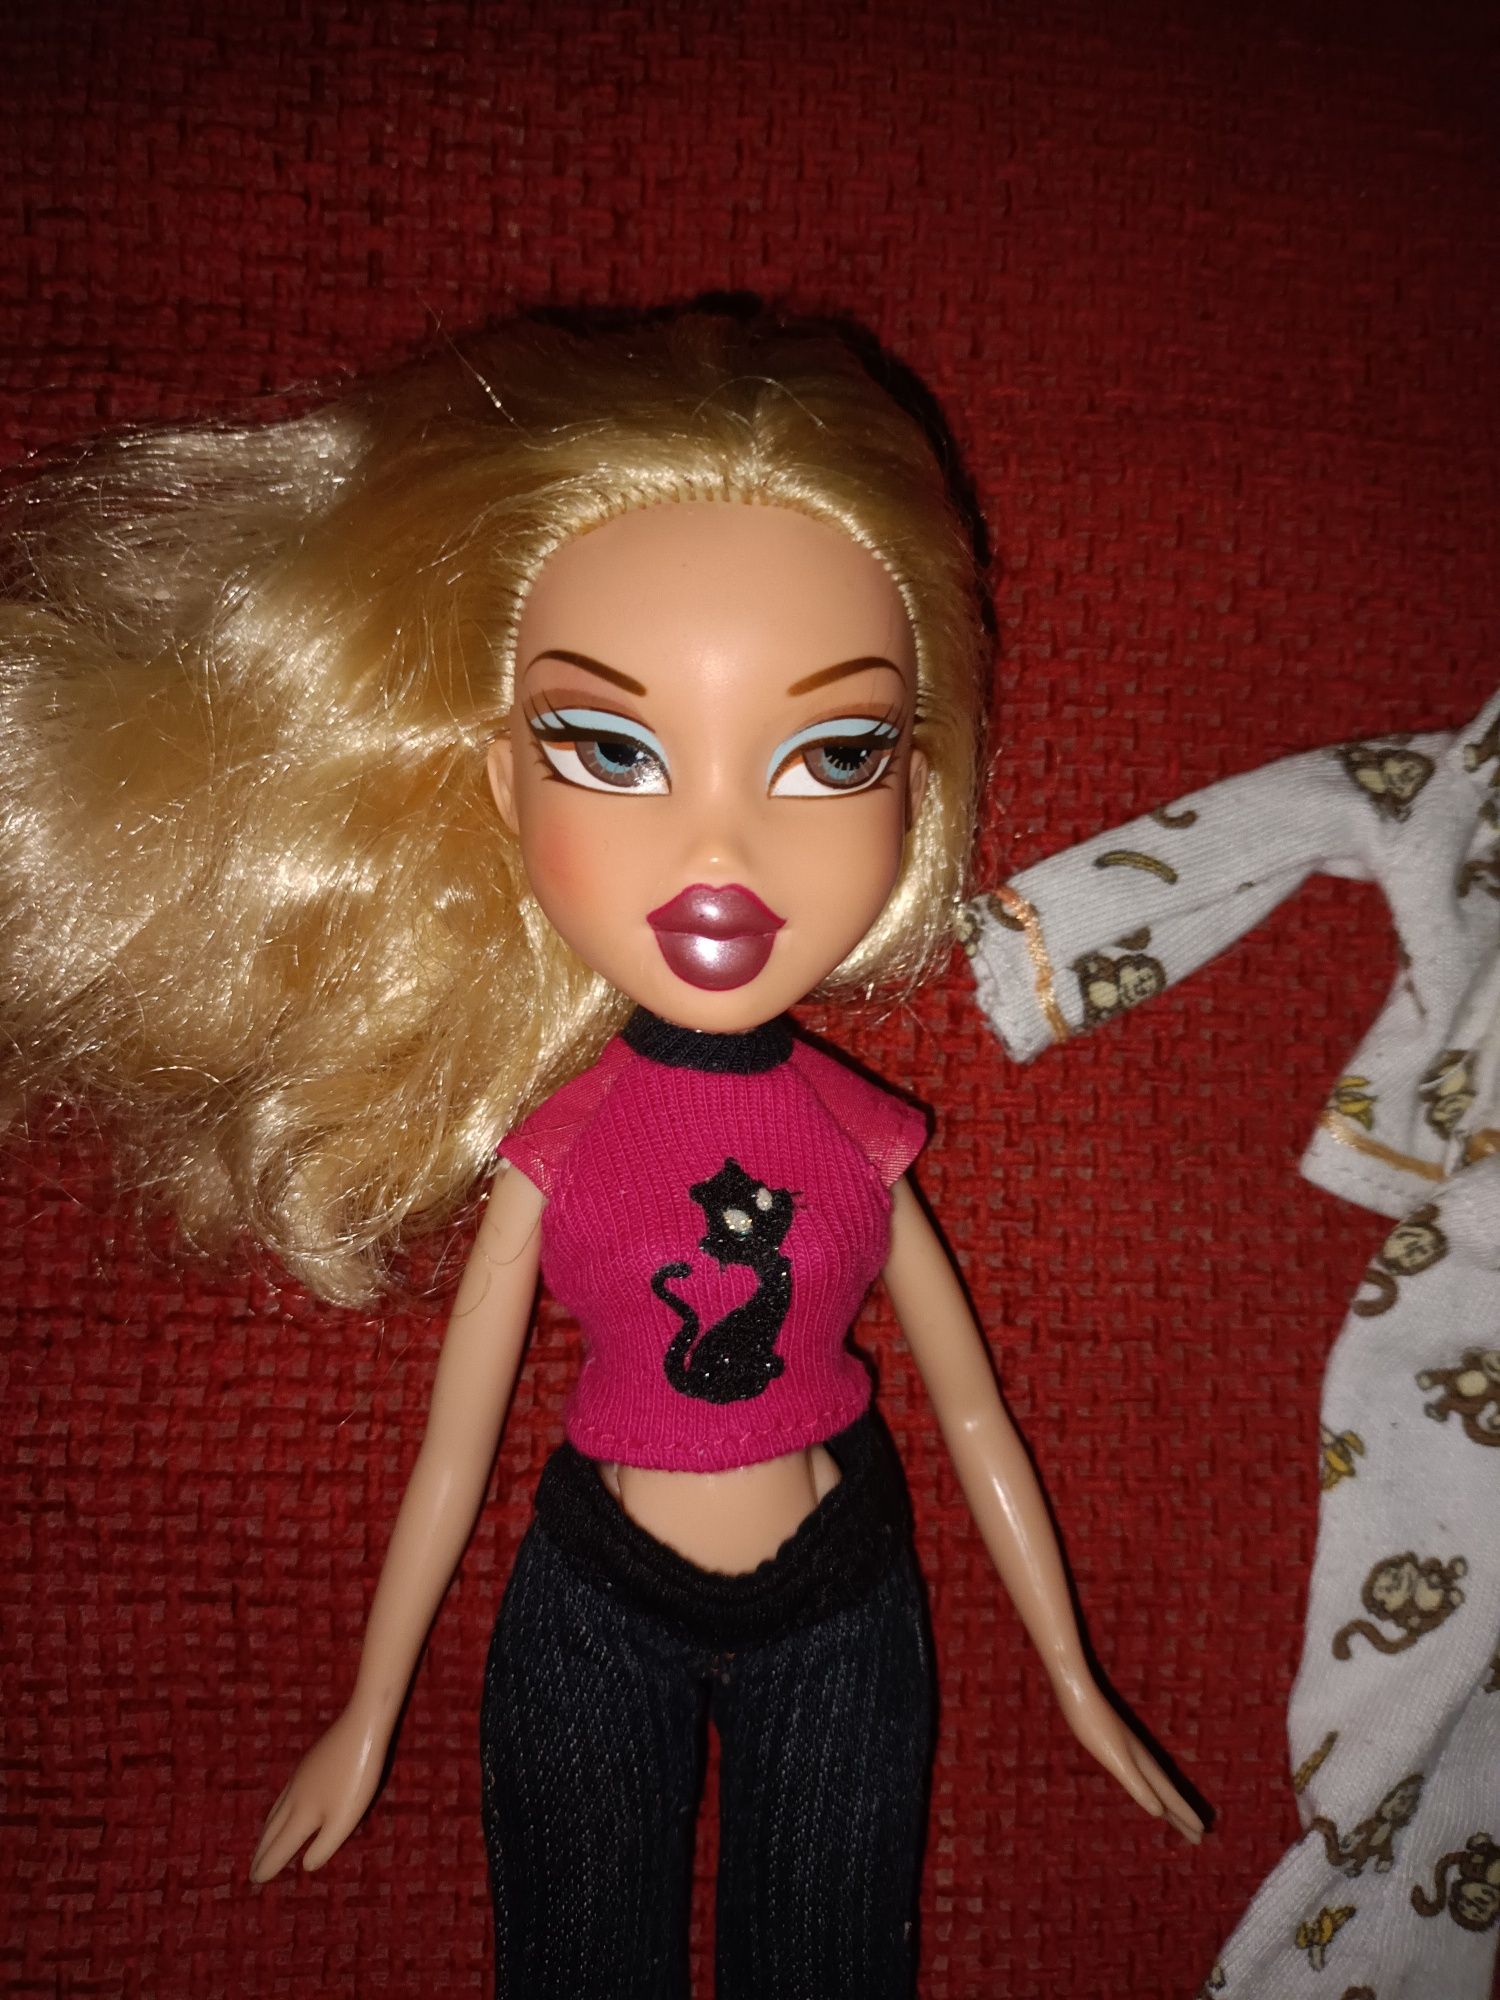 Papusa Bratz Cloe seria Head Gamez, gen Barbie